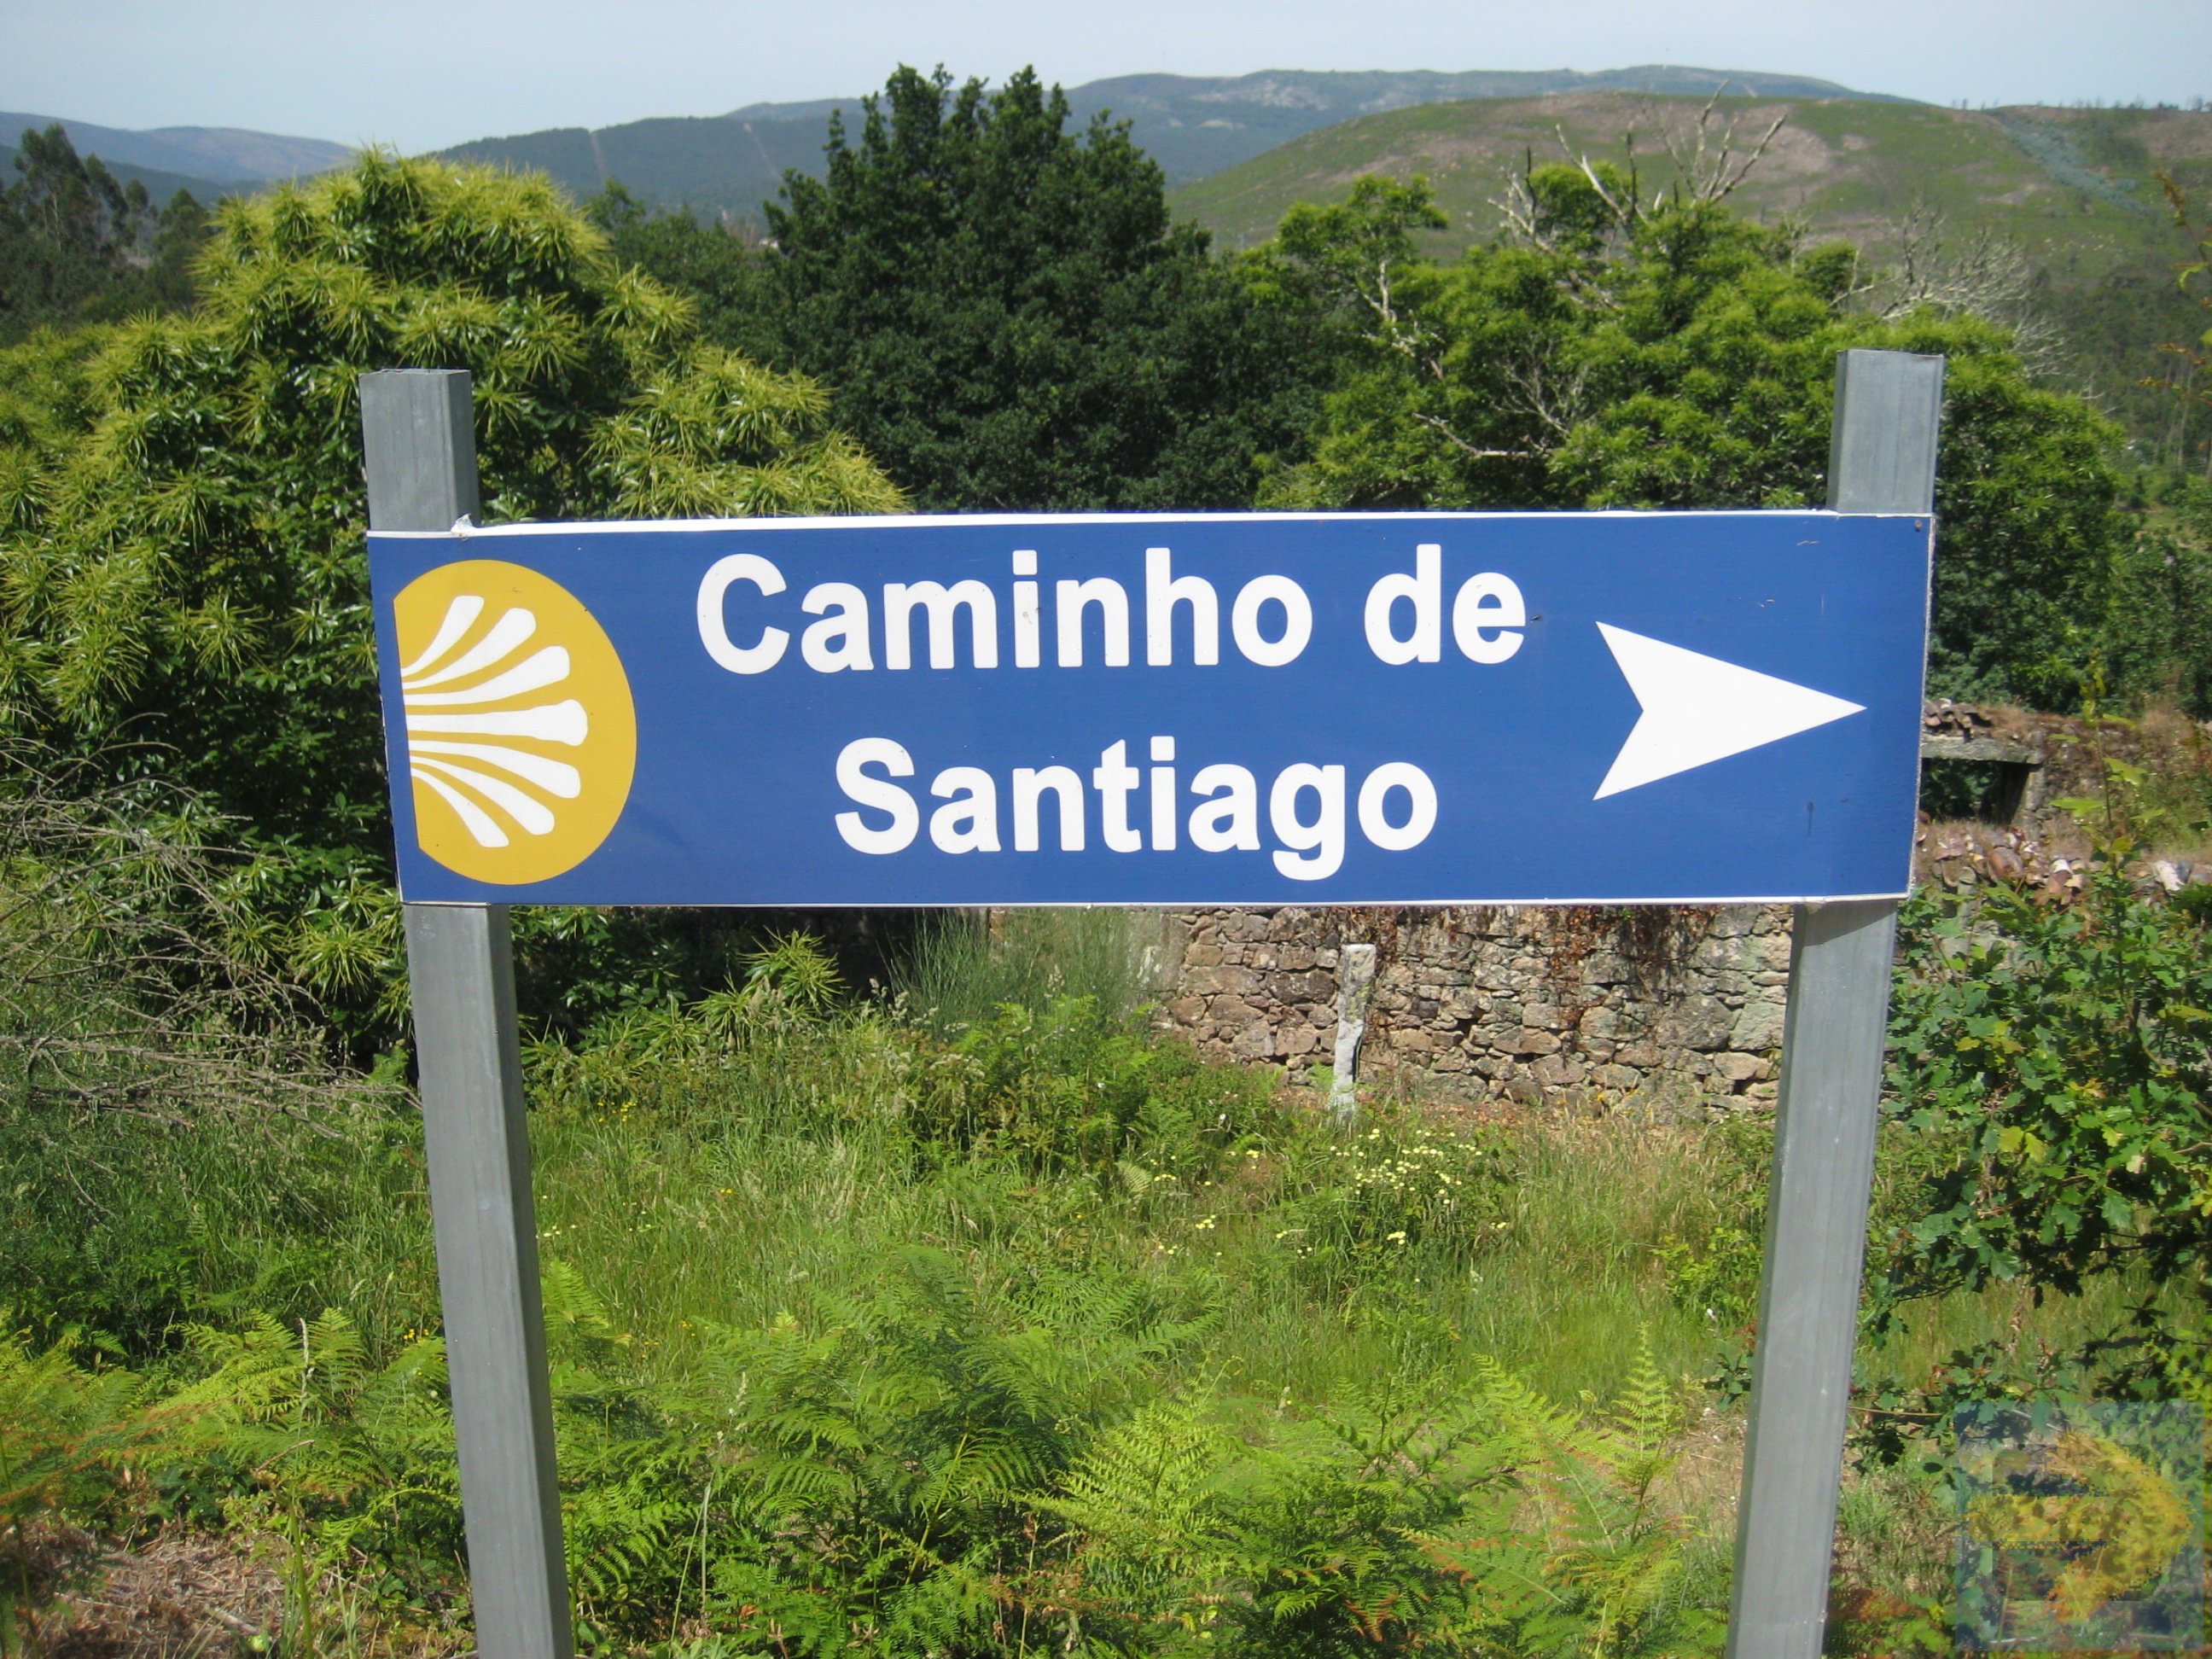 Aha, this way to Santiago